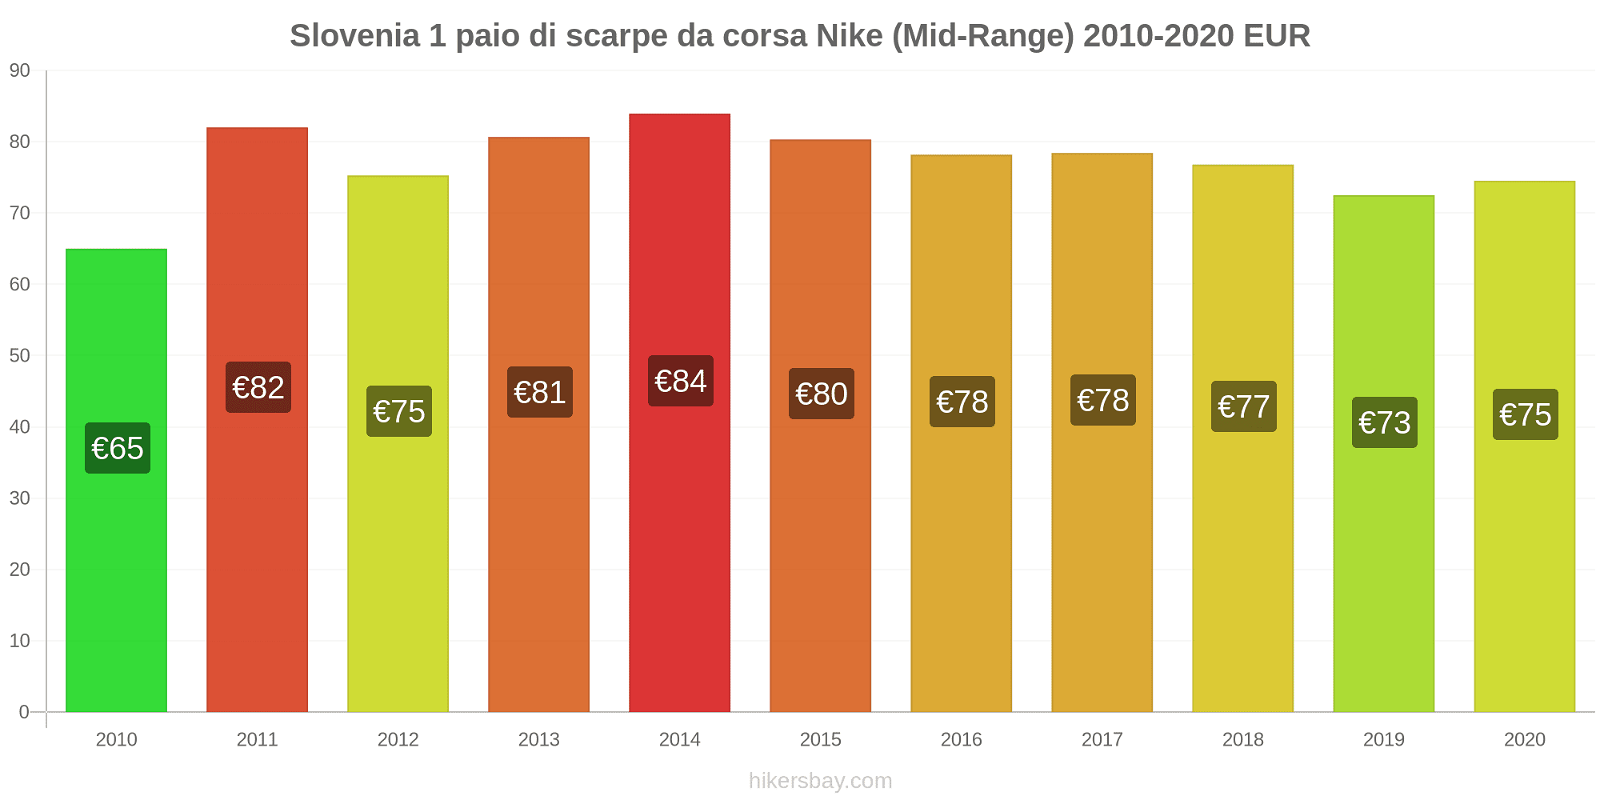 Slovenia variazioni di prezzo 1 paio di scarpe da corsa Nike (simile) hikersbay.com